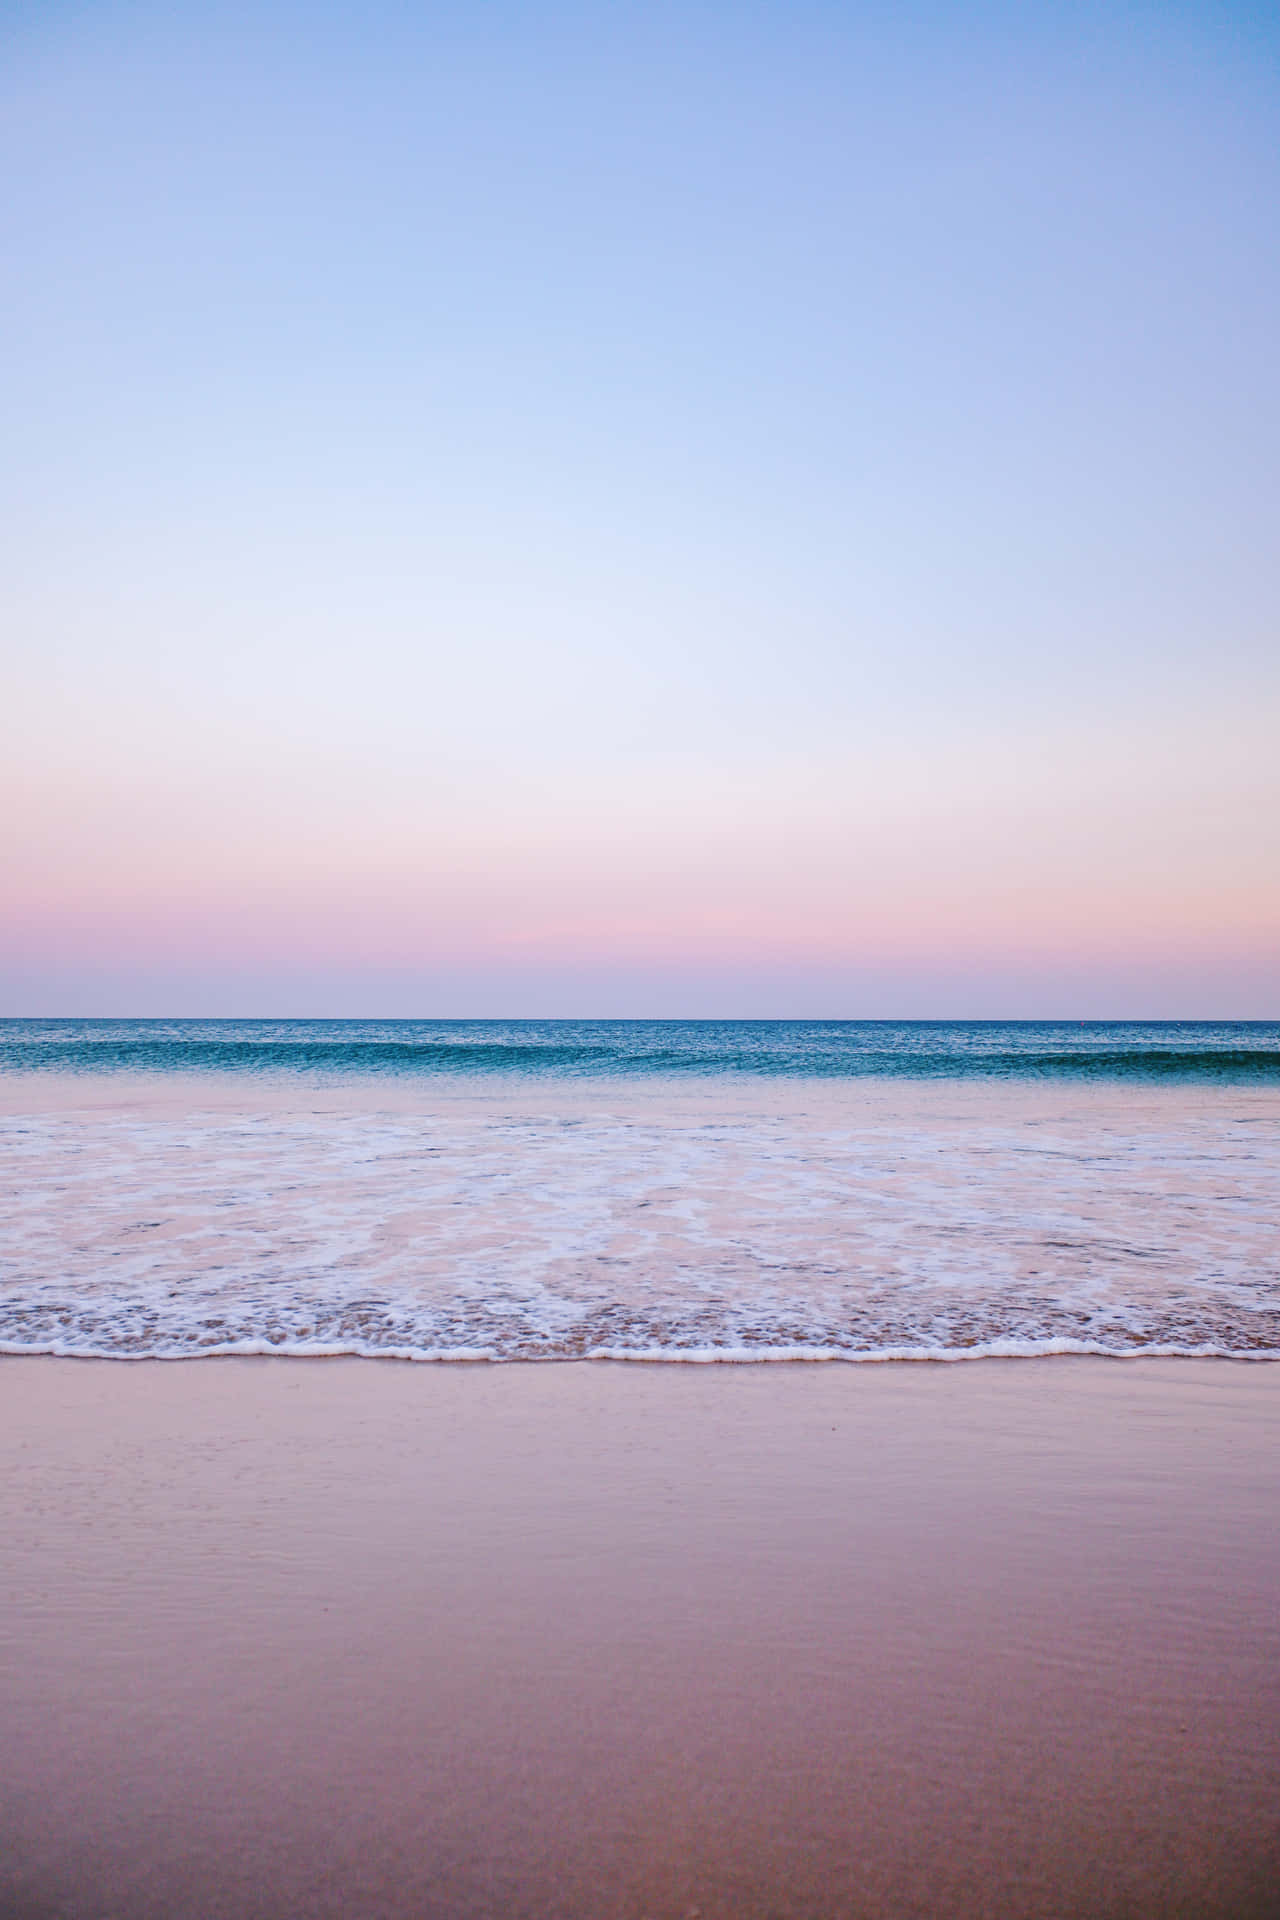 Nyd en lykkelig dag med hvile og afslapning ved den rolige pastelfarvede strand. Wallpaper